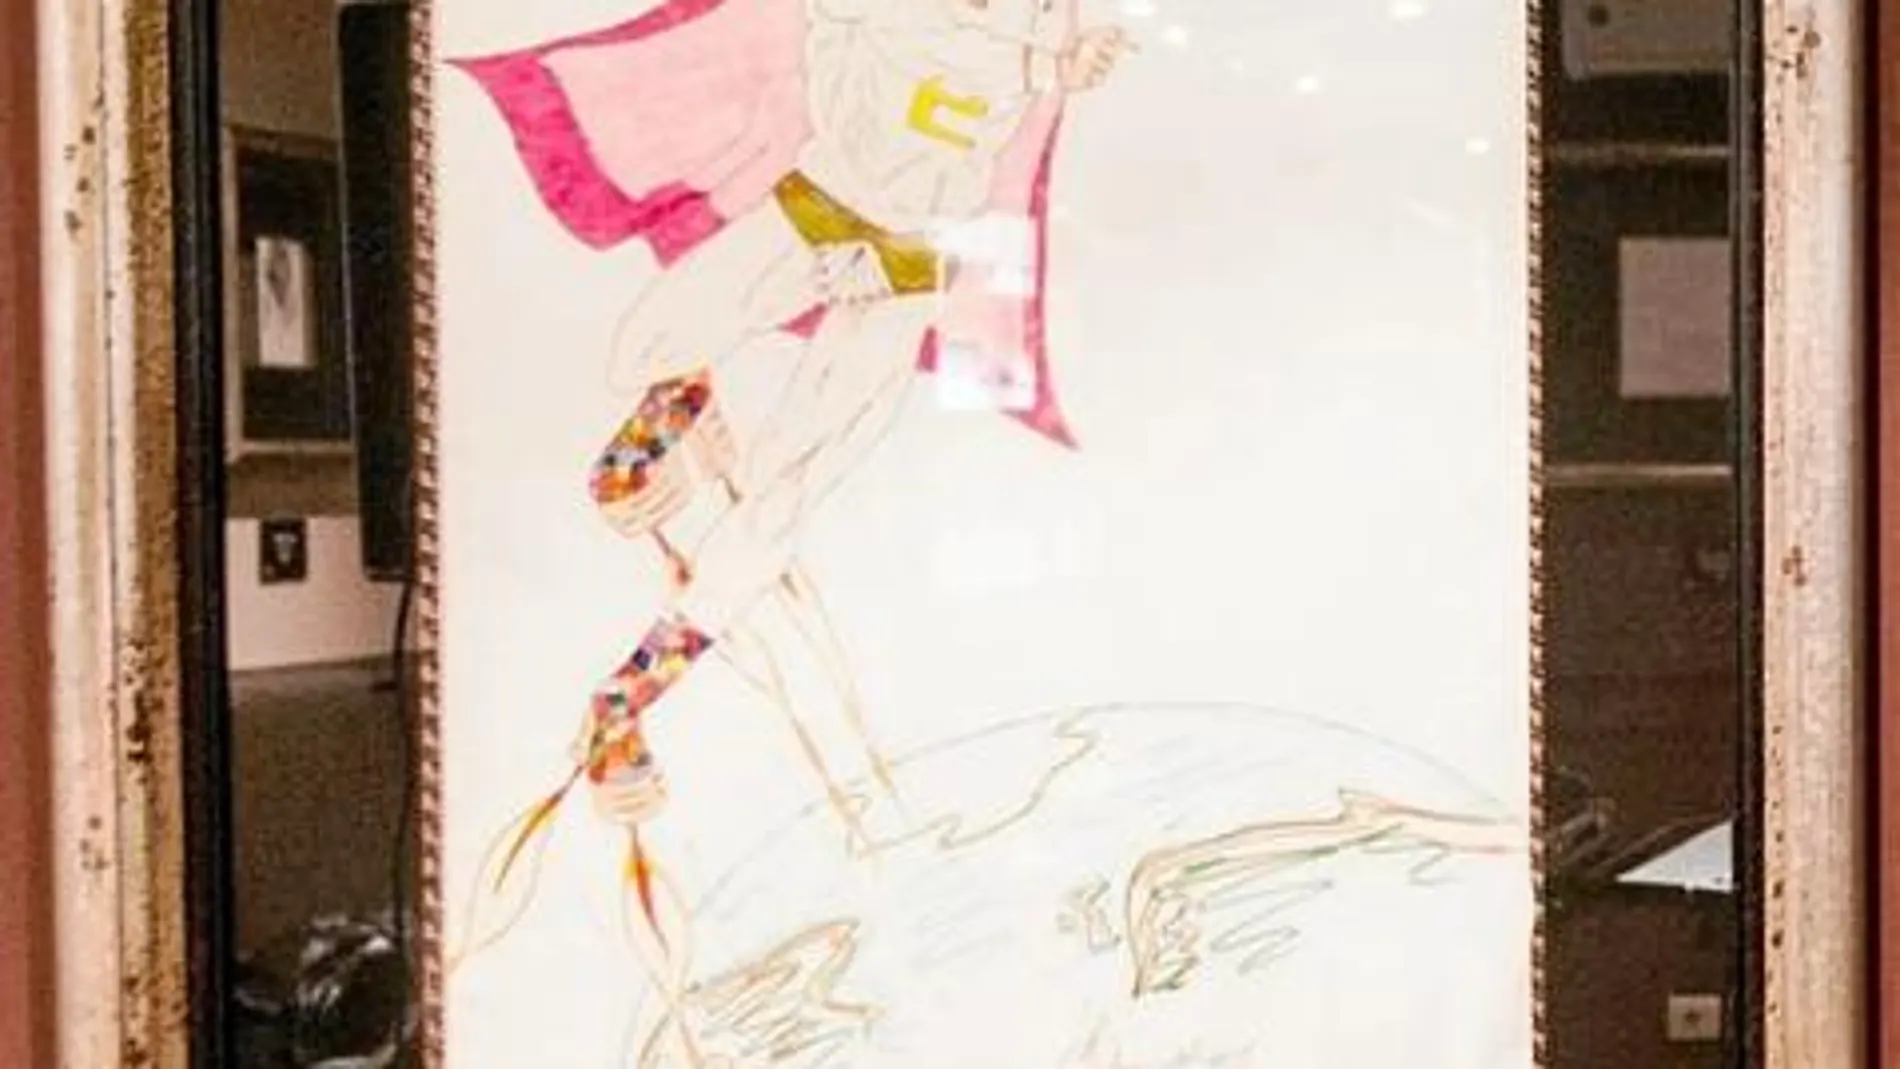 El dibujo naïf de Elton John es una de las joyas de la corona de la exposición «The Art of Hard Rock»